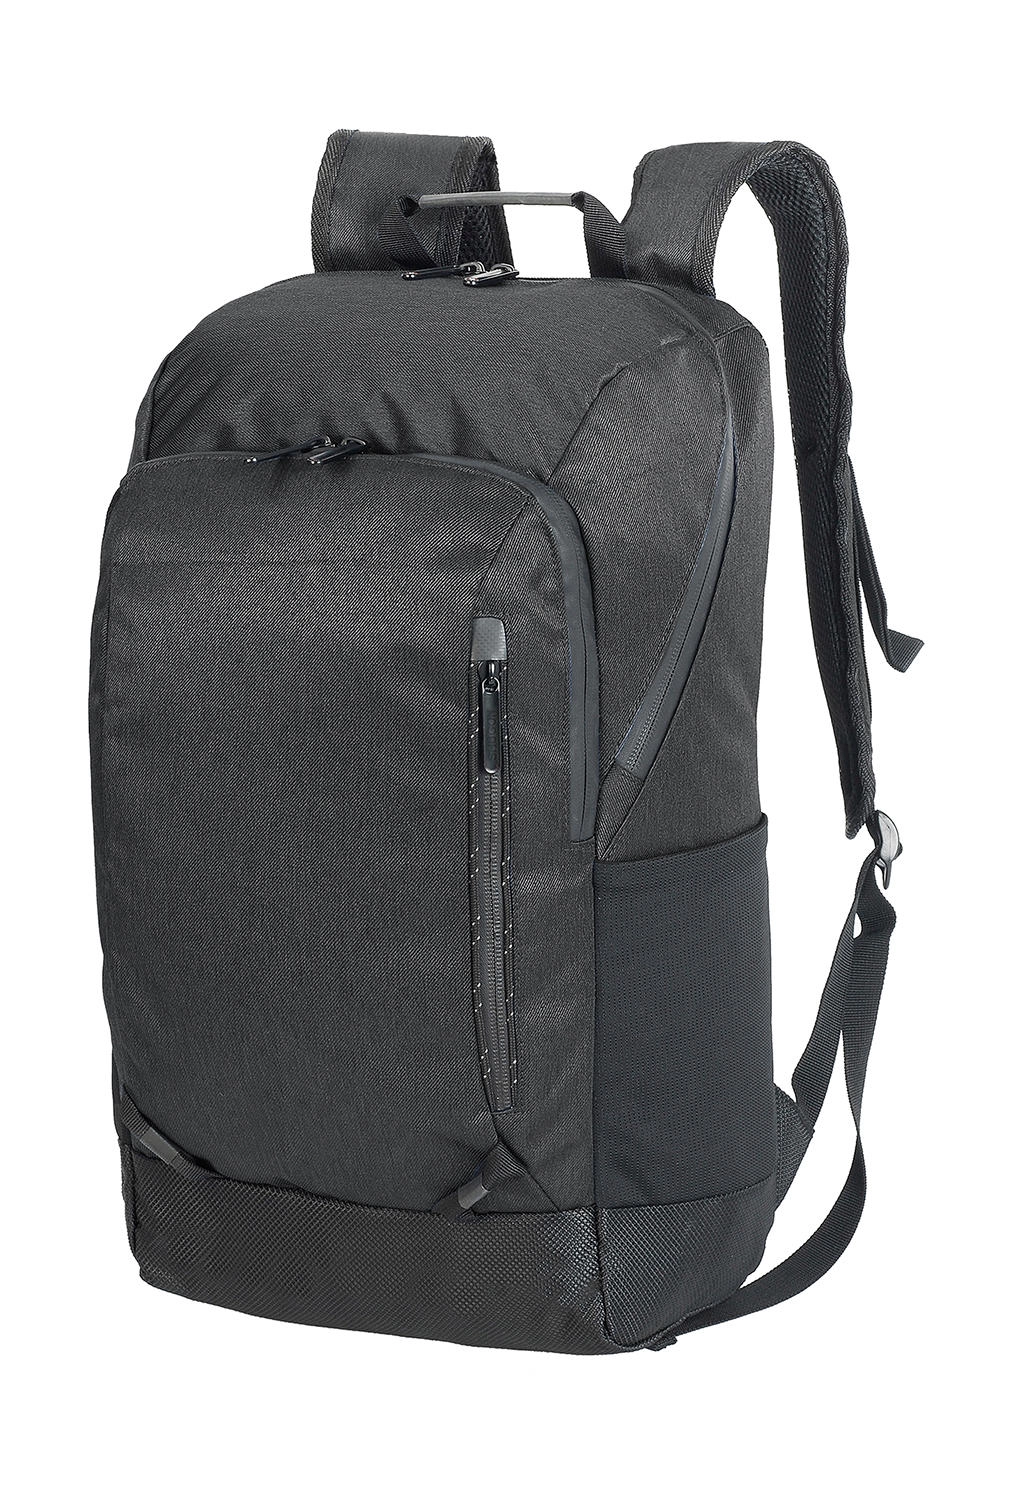 Jerusalem Laptop Backpack zum Besticken und Bedrucken in der Farbe Black/Black mit Ihren Logo, Schriftzug oder Motiv.